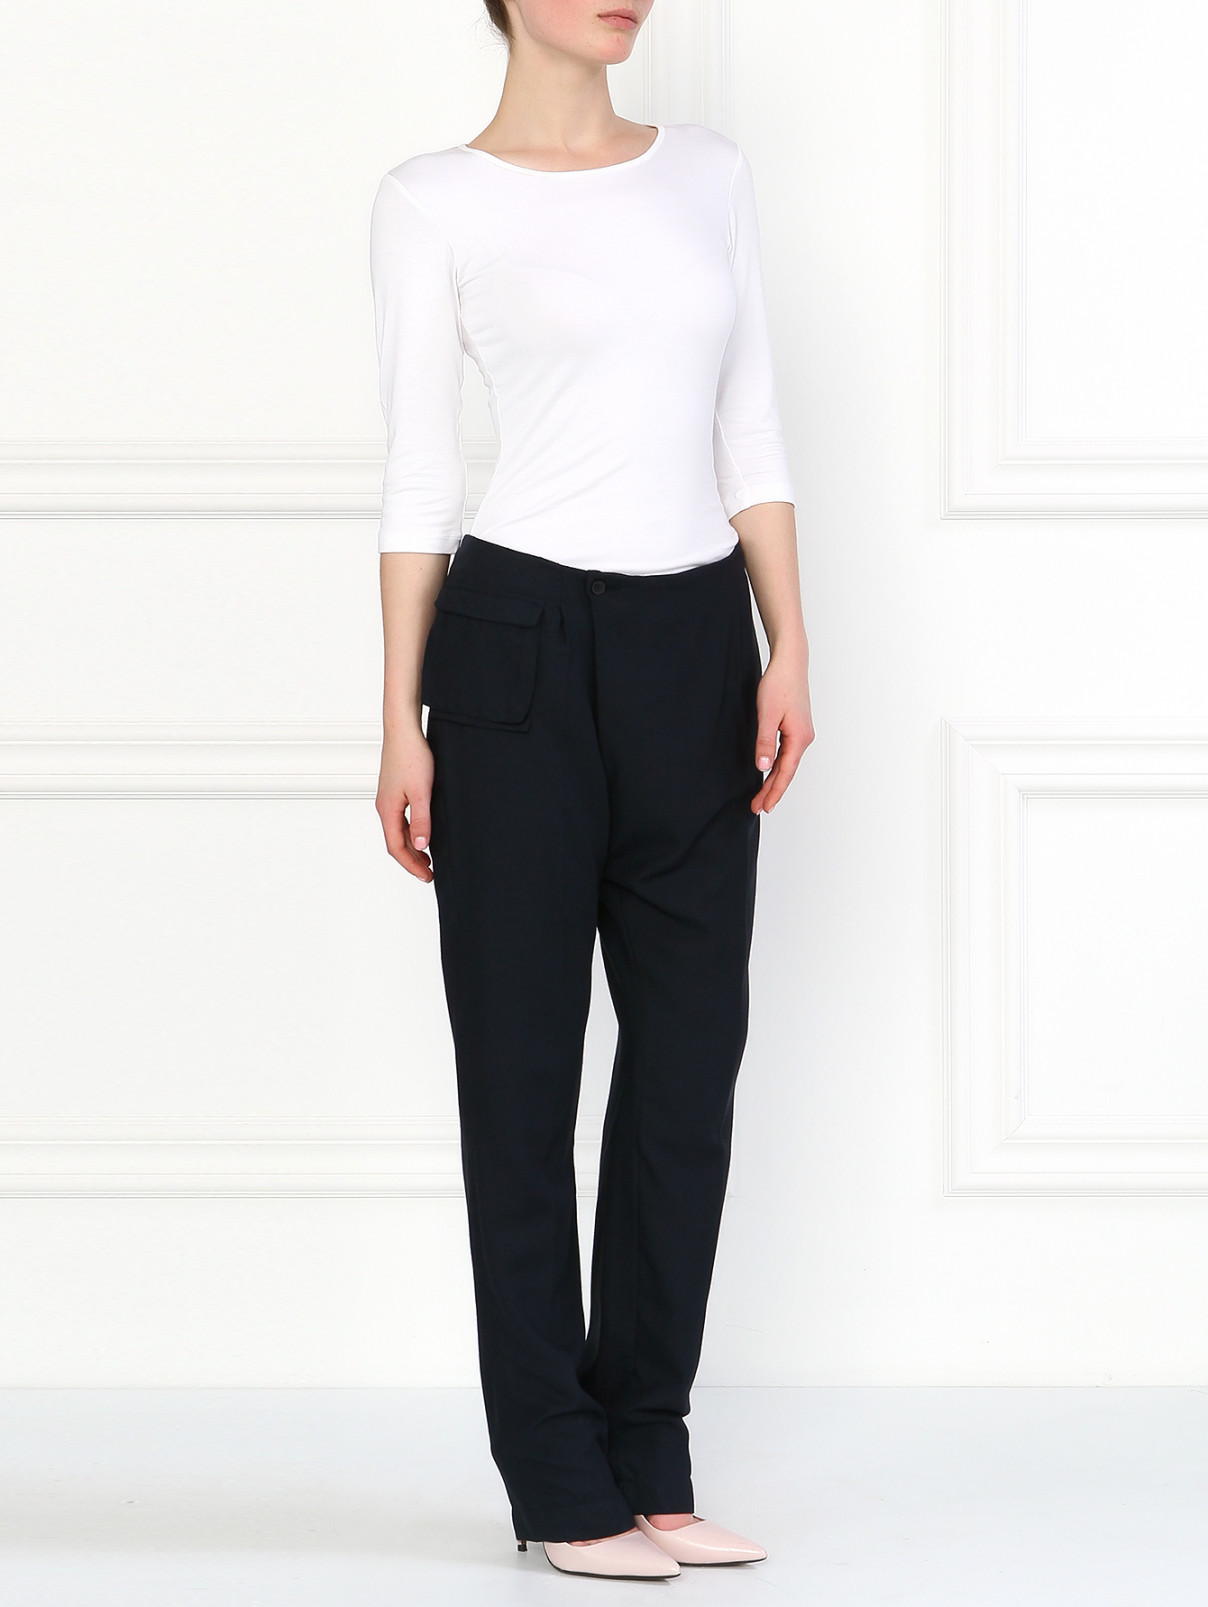 Асимметричные брюки с накладным карманом Anne Valerie Hash  –  Модель Общий вид  – Цвет:  Серый